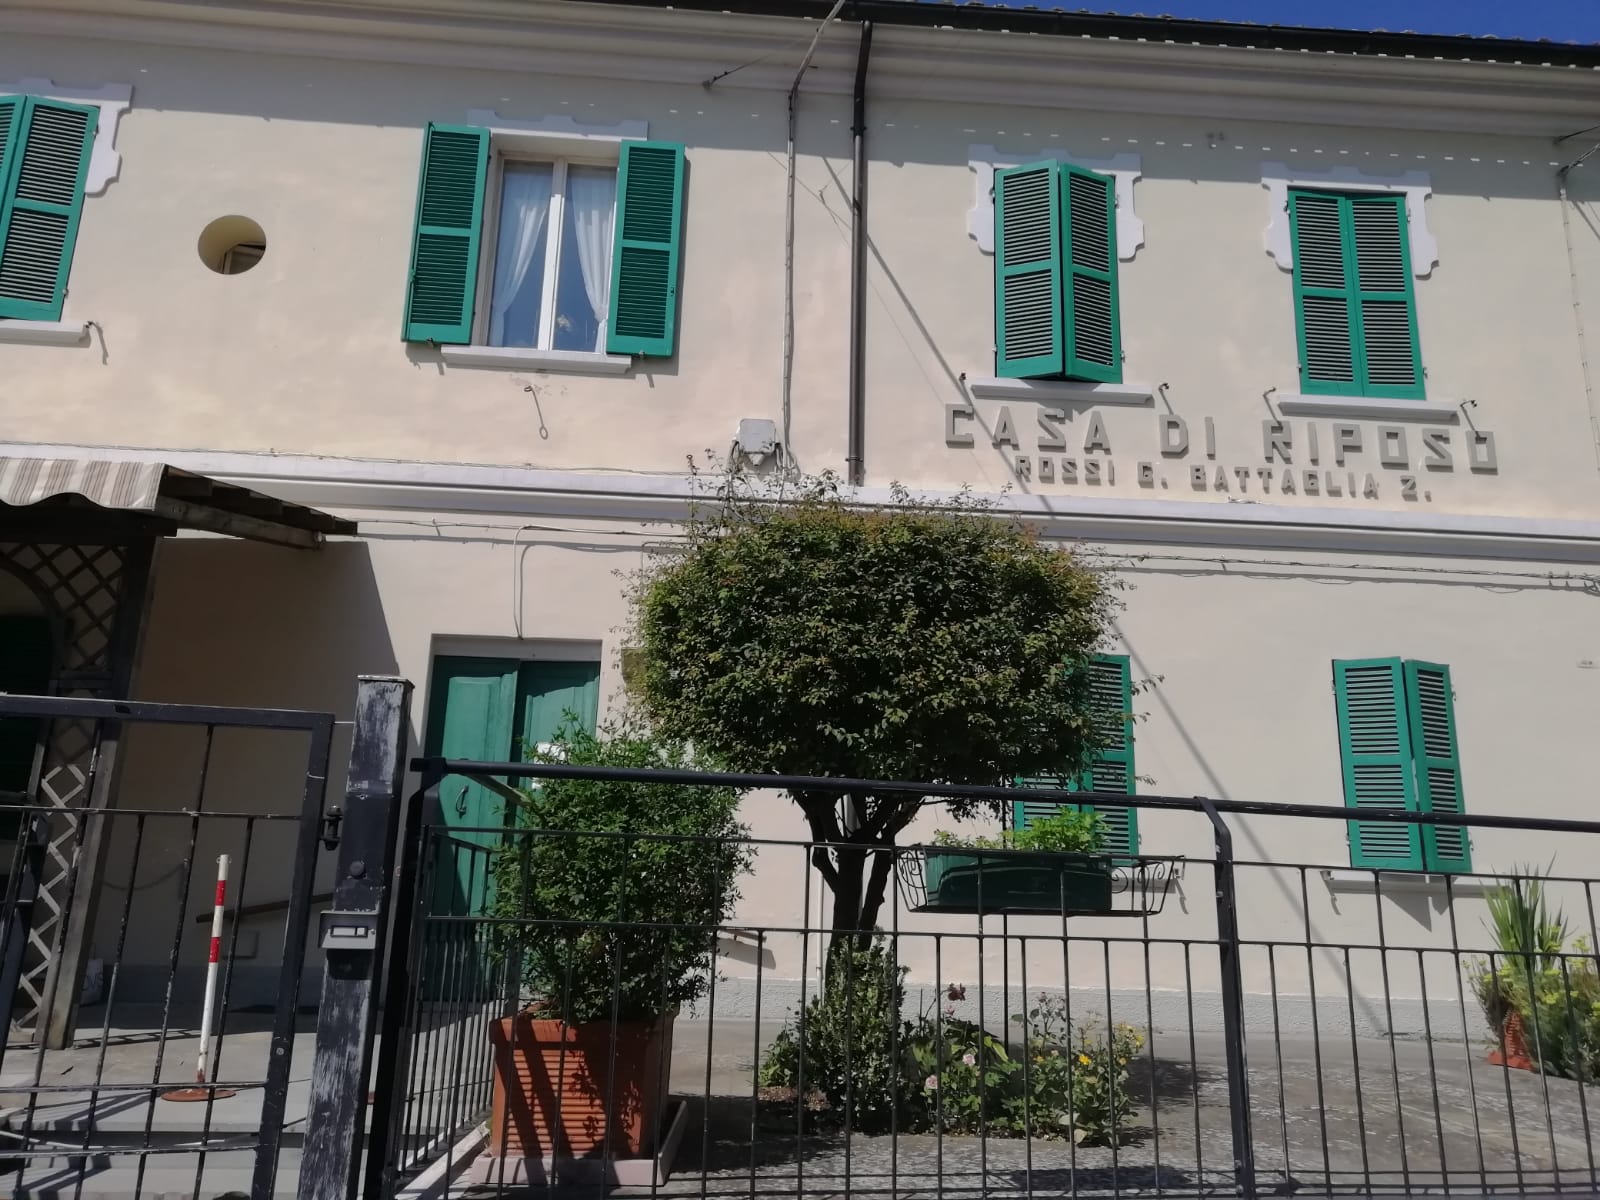 Residenza per anziani “Rossi e Battaglia” ad Apiro